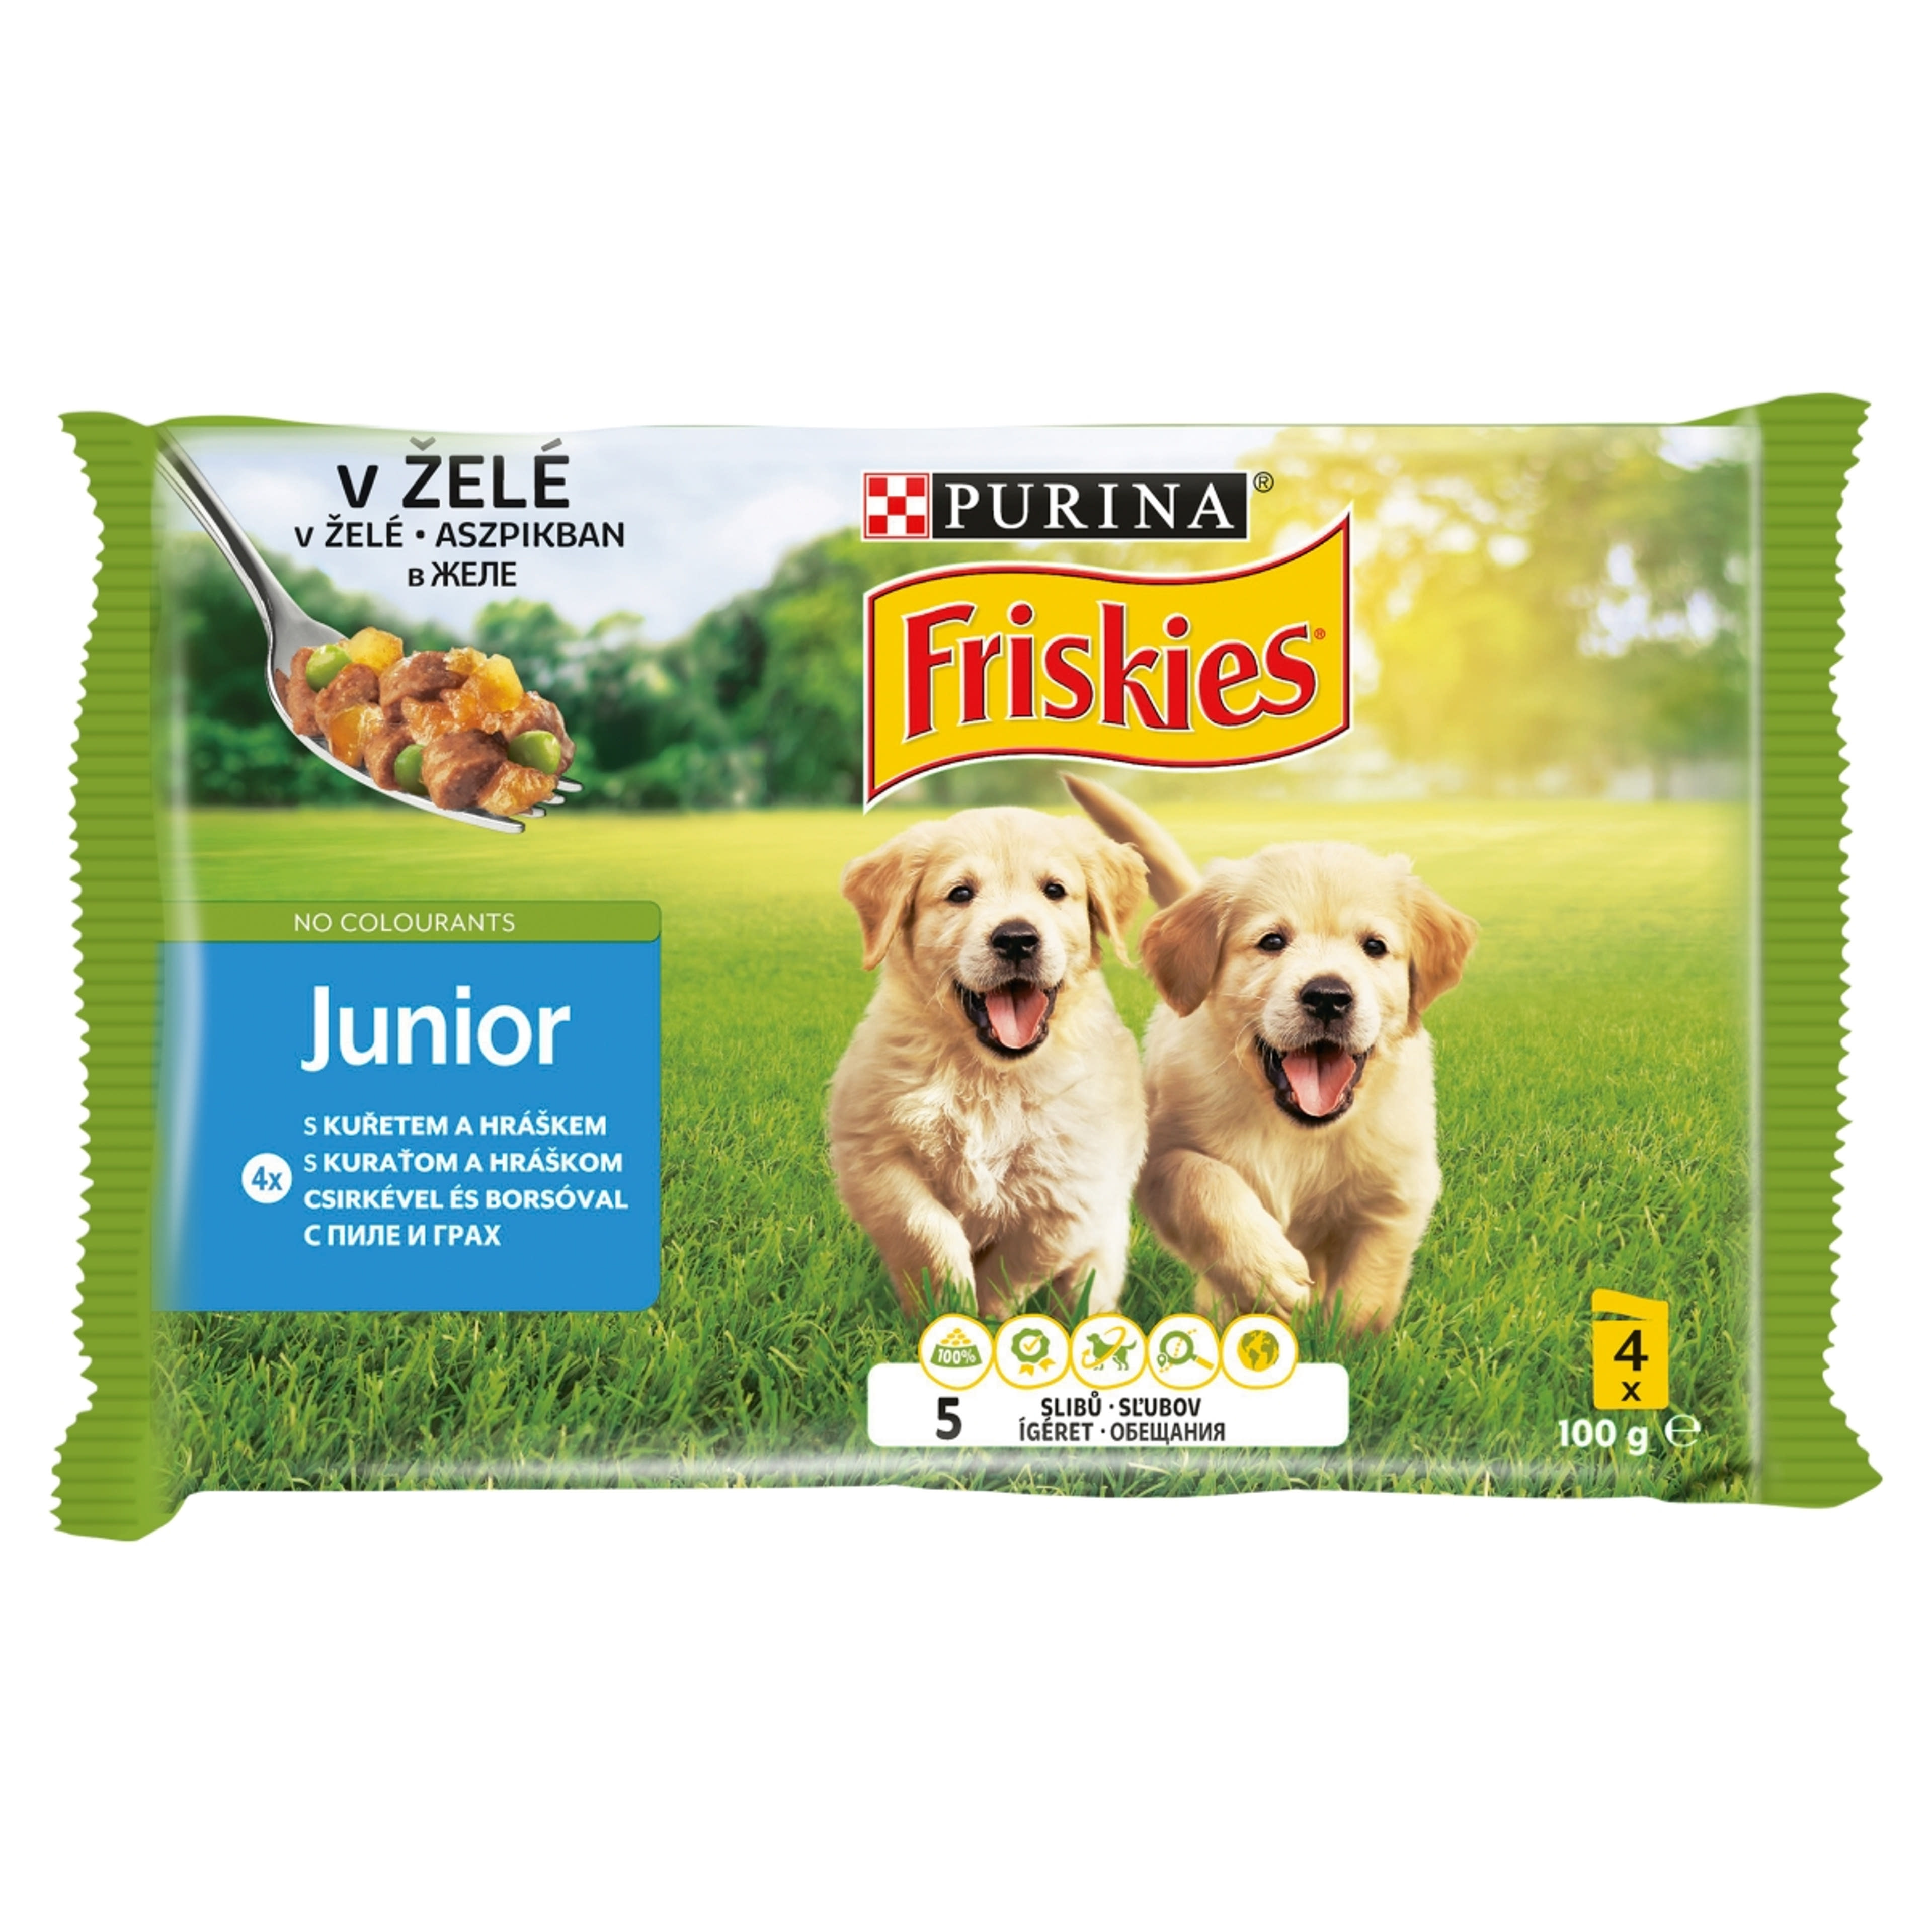 Friskies Junior alutasak kutyáknak, válogatás aszpikban (4x100 g) - 400 g